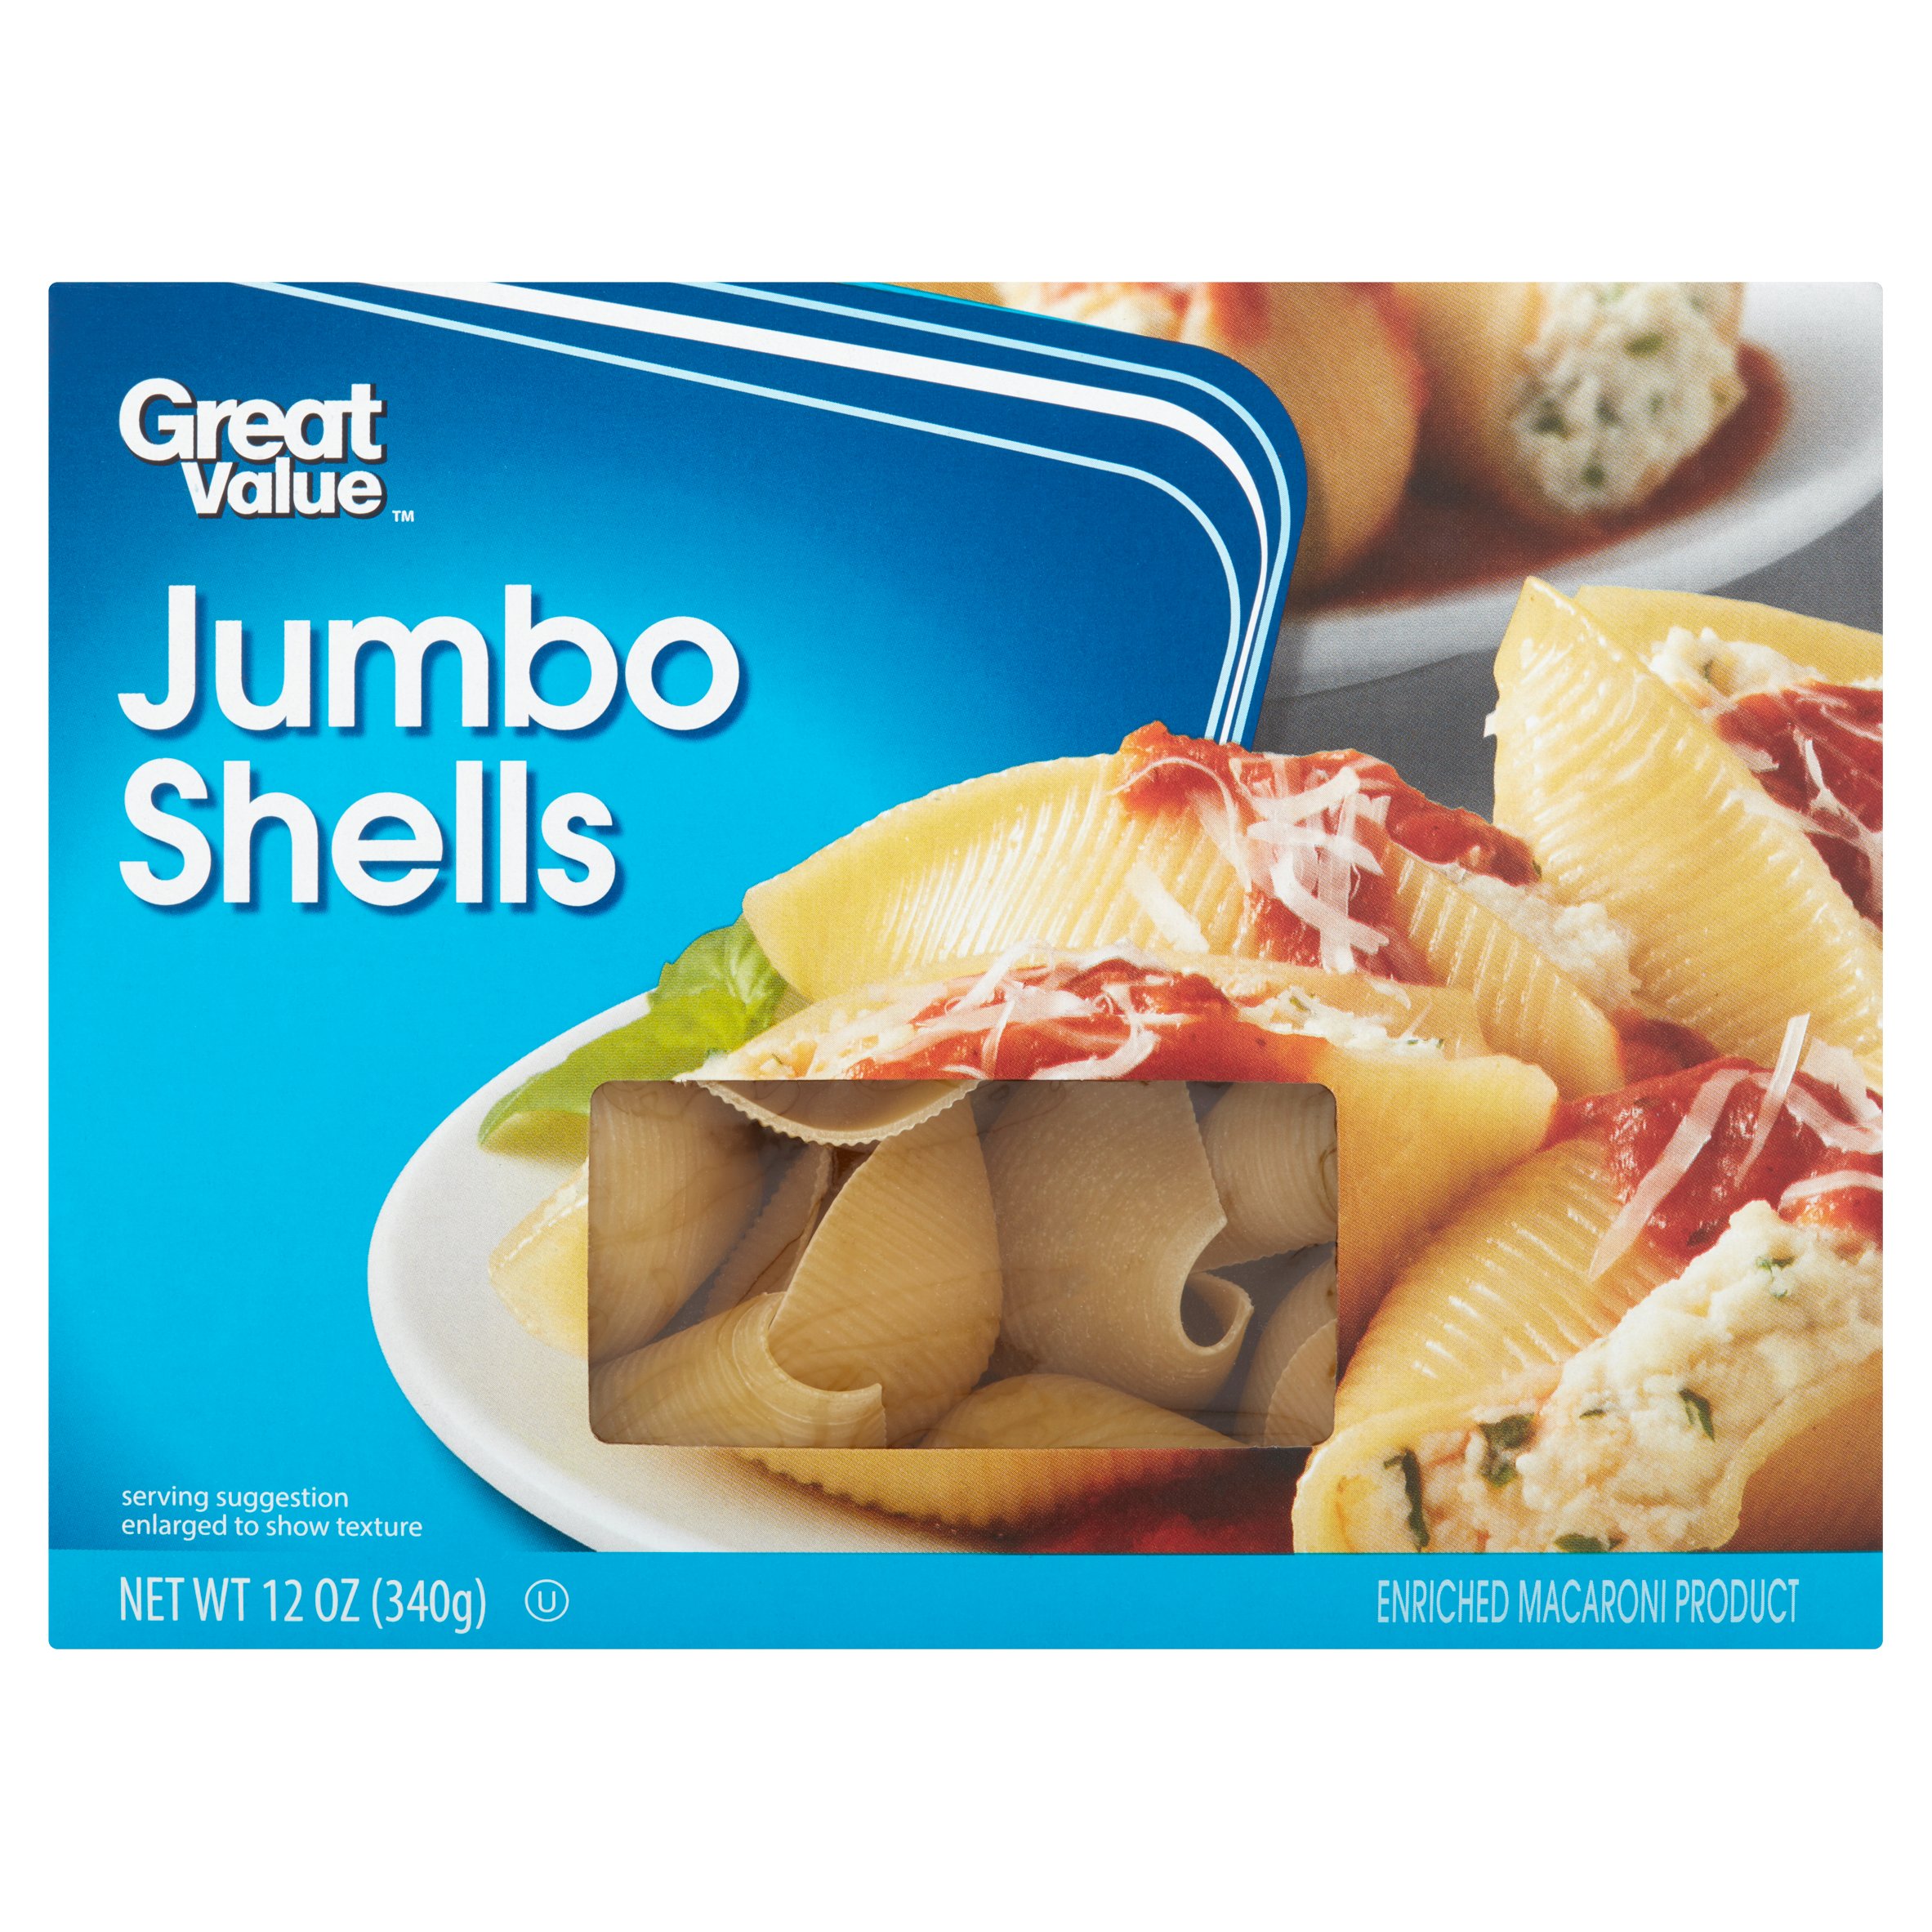 Great Value Jumbo Shells Macaroni